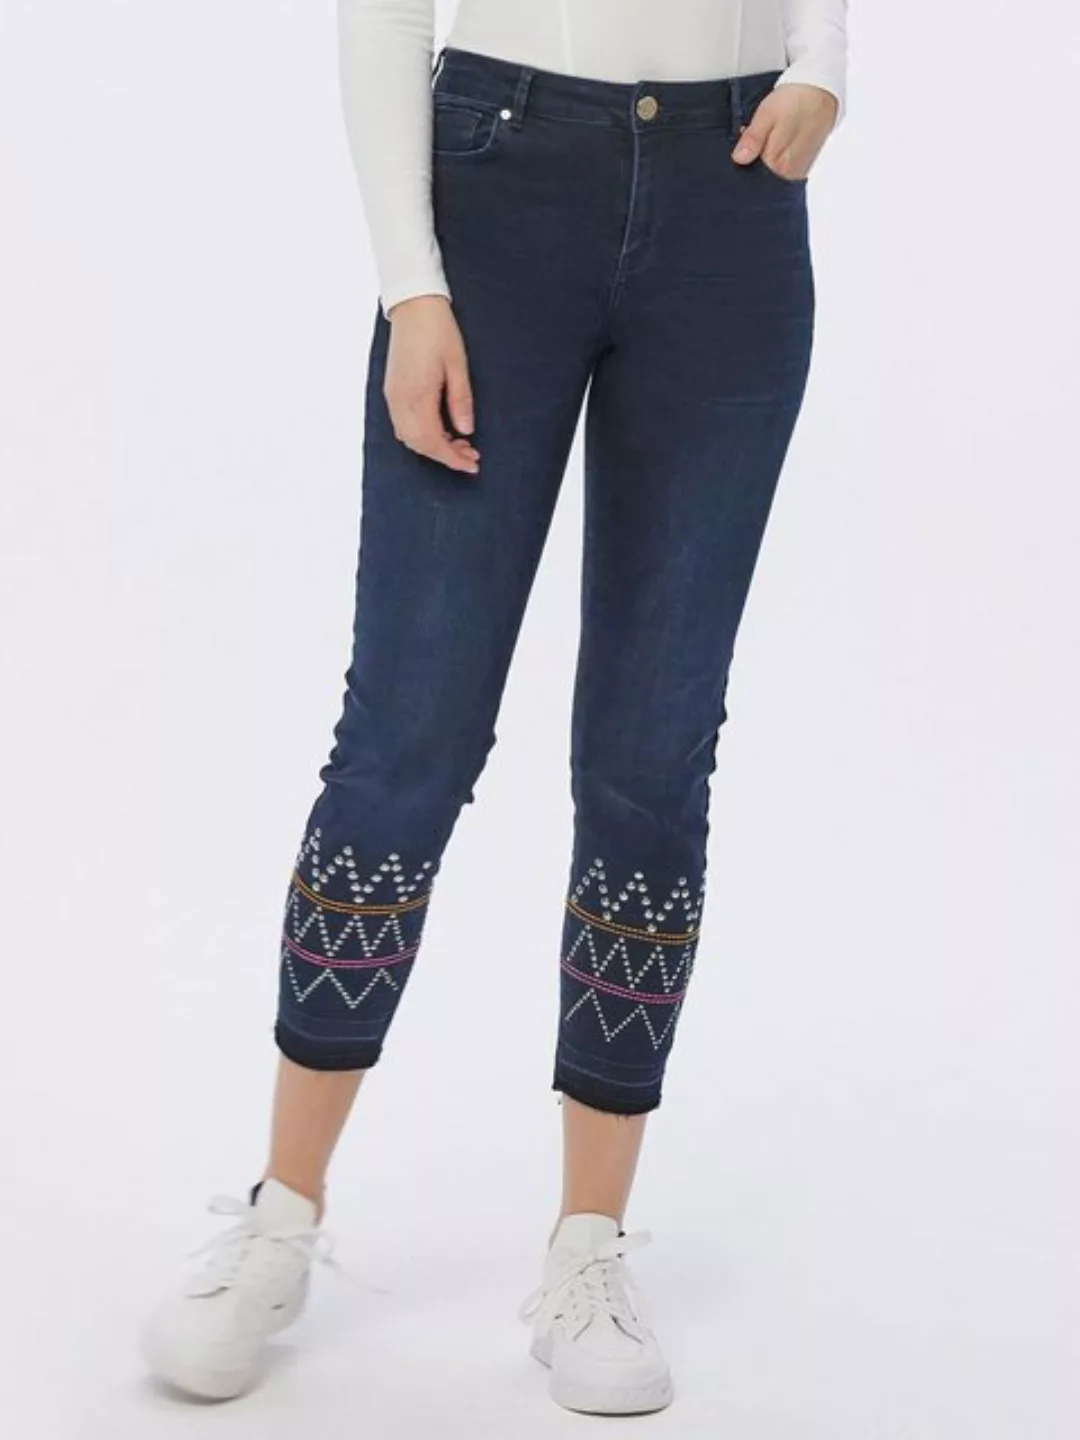 atinka 7/8-Jeans Ankle-Jeans mit Stickerei günstig online kaufen